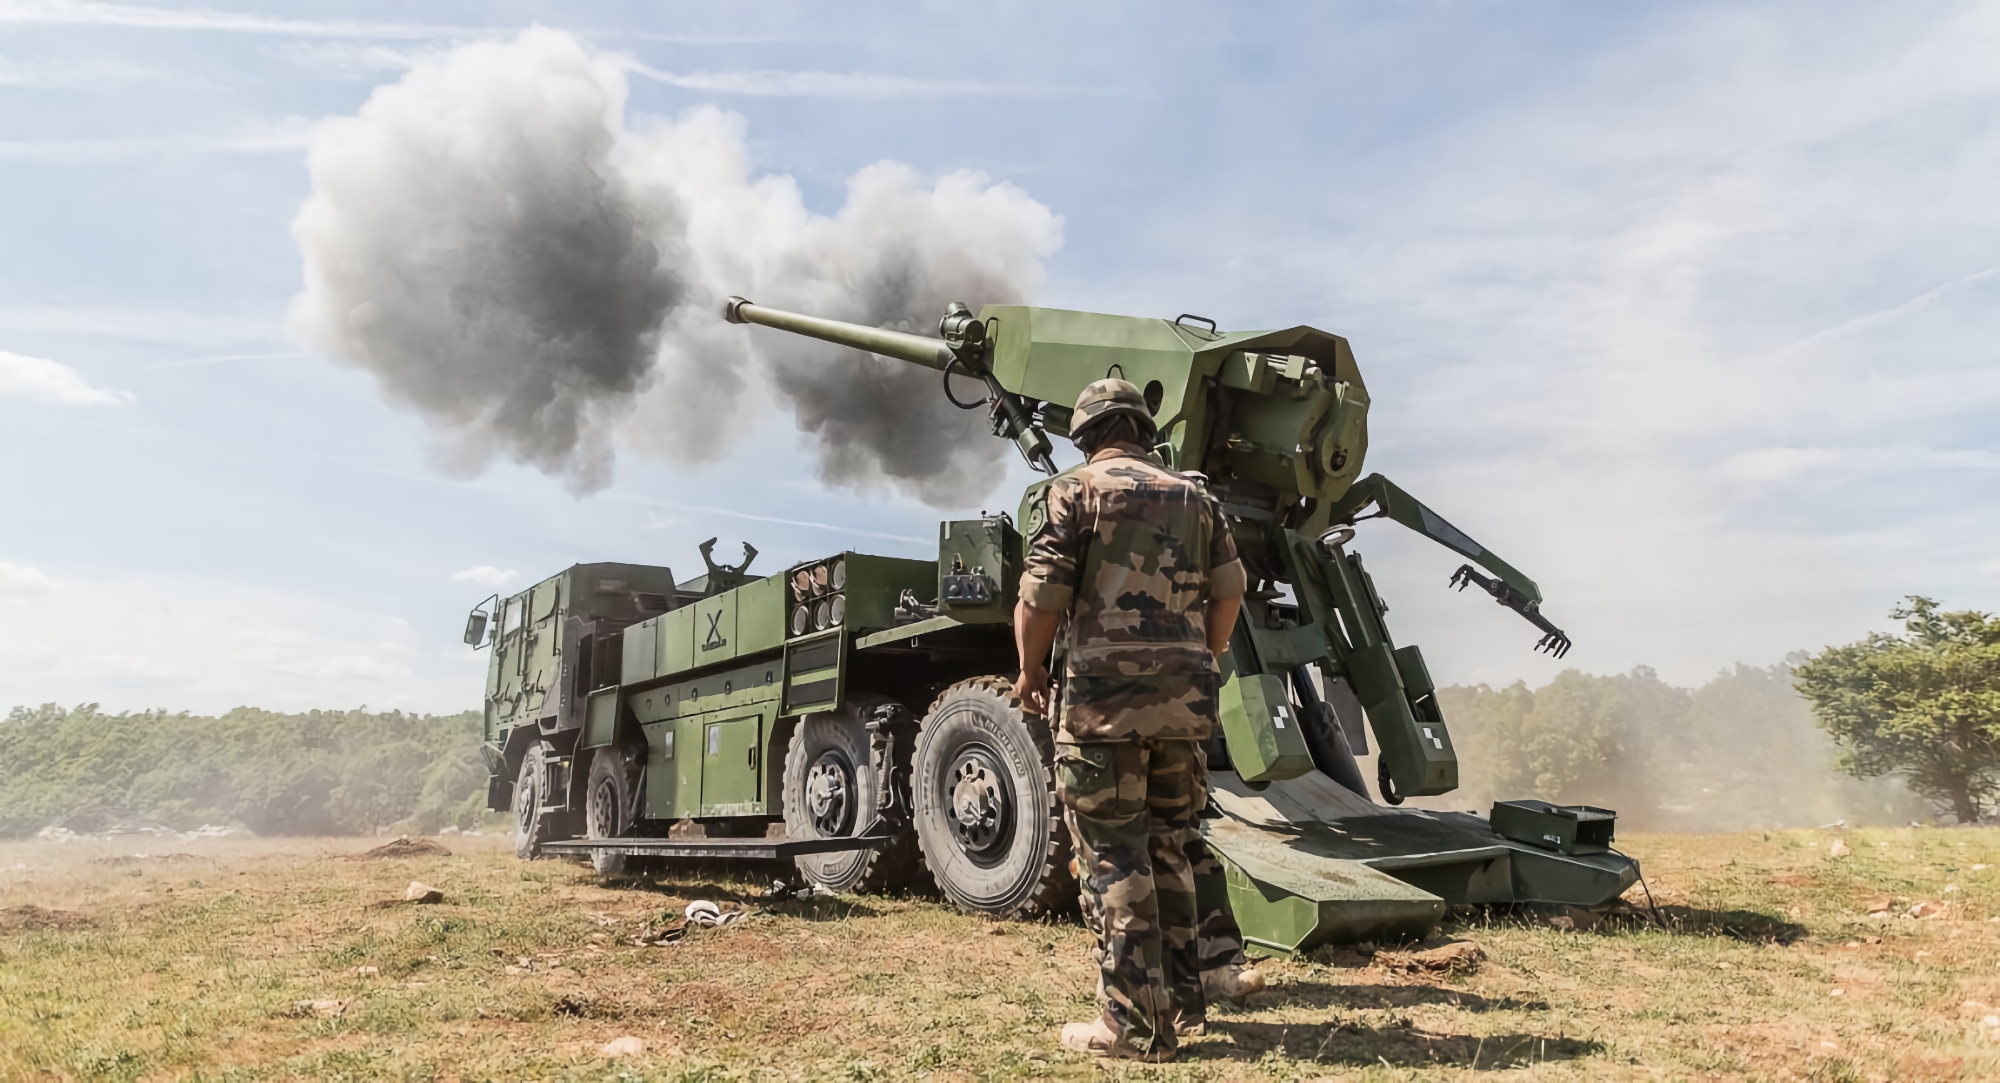 Le forze armate ucraine riceveranno proiettili Vulcano ad alta precisione, con loro i cannoni semoventi Caesar, Krab e PzH 2000 saranno in grado di colpire bersagli a una distanza di 70-80 km